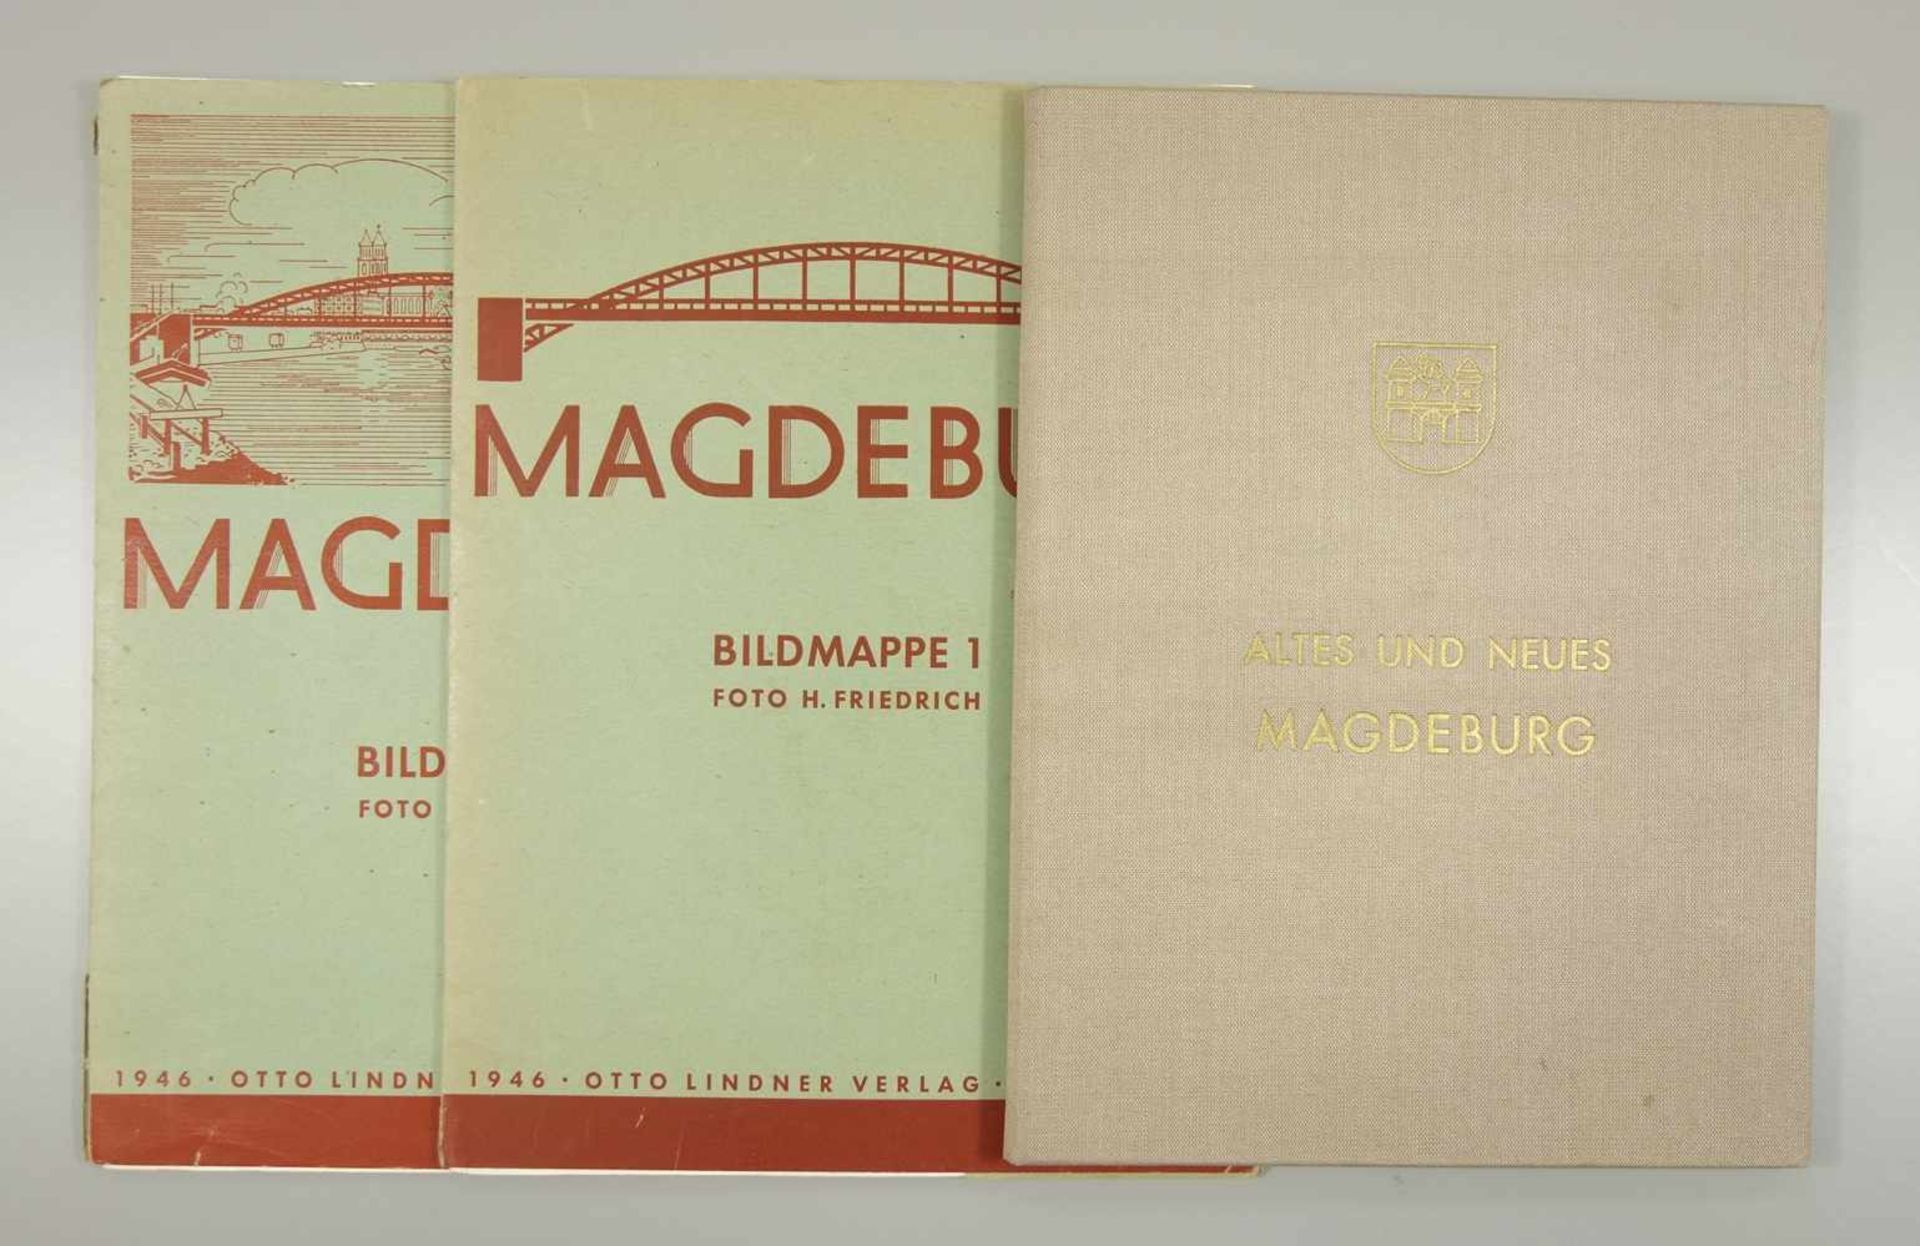 3 Magdeburger Bild- / Fotomappen; Bildmappe 1 und 2 mit jeweils 17 Abb. nach Fotos von H.